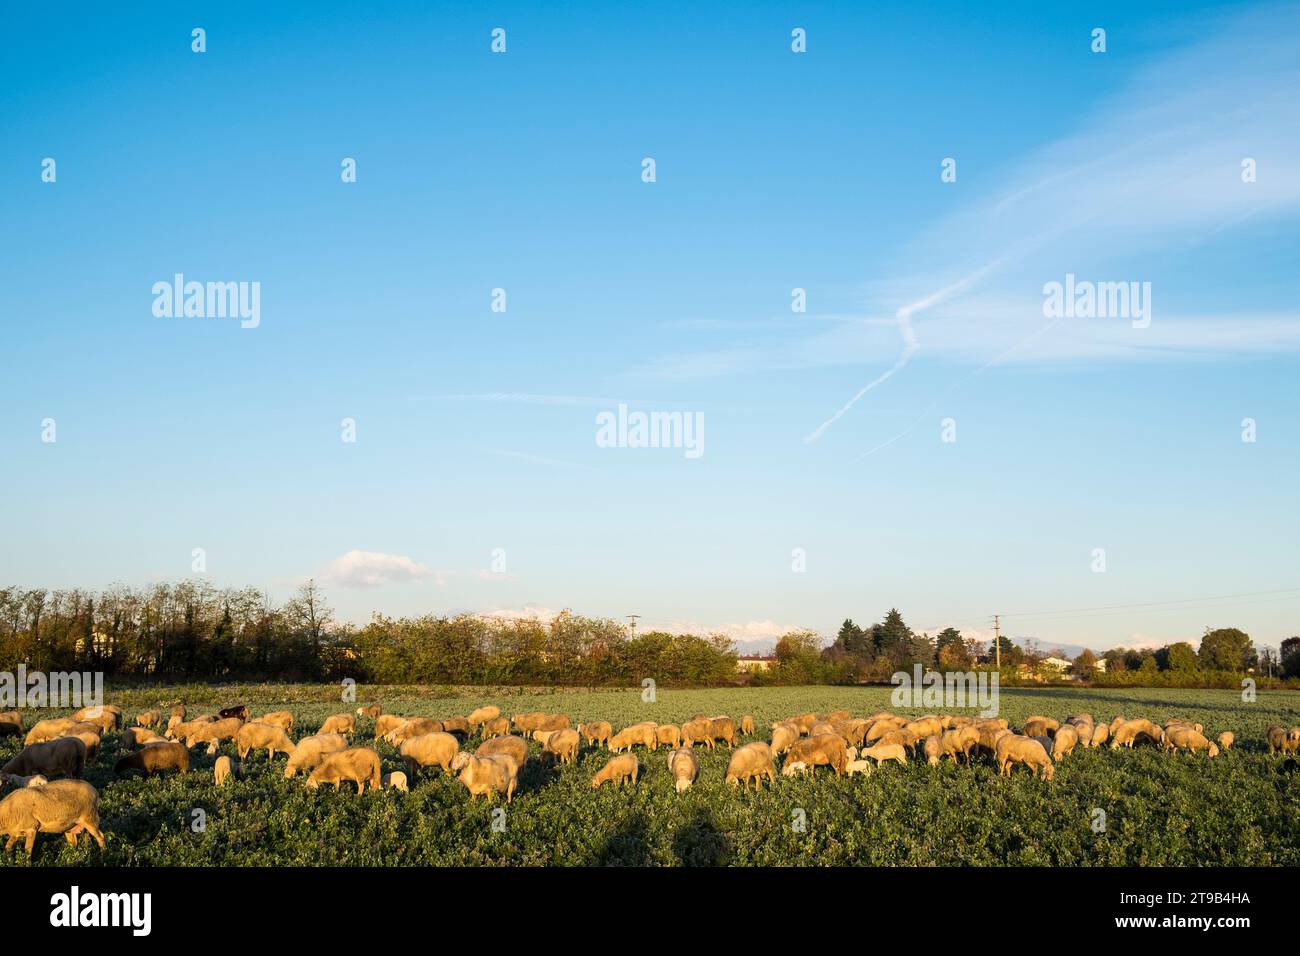 Italy, Lombardy, Busto Garolfo, flock of sheep Stock Photo